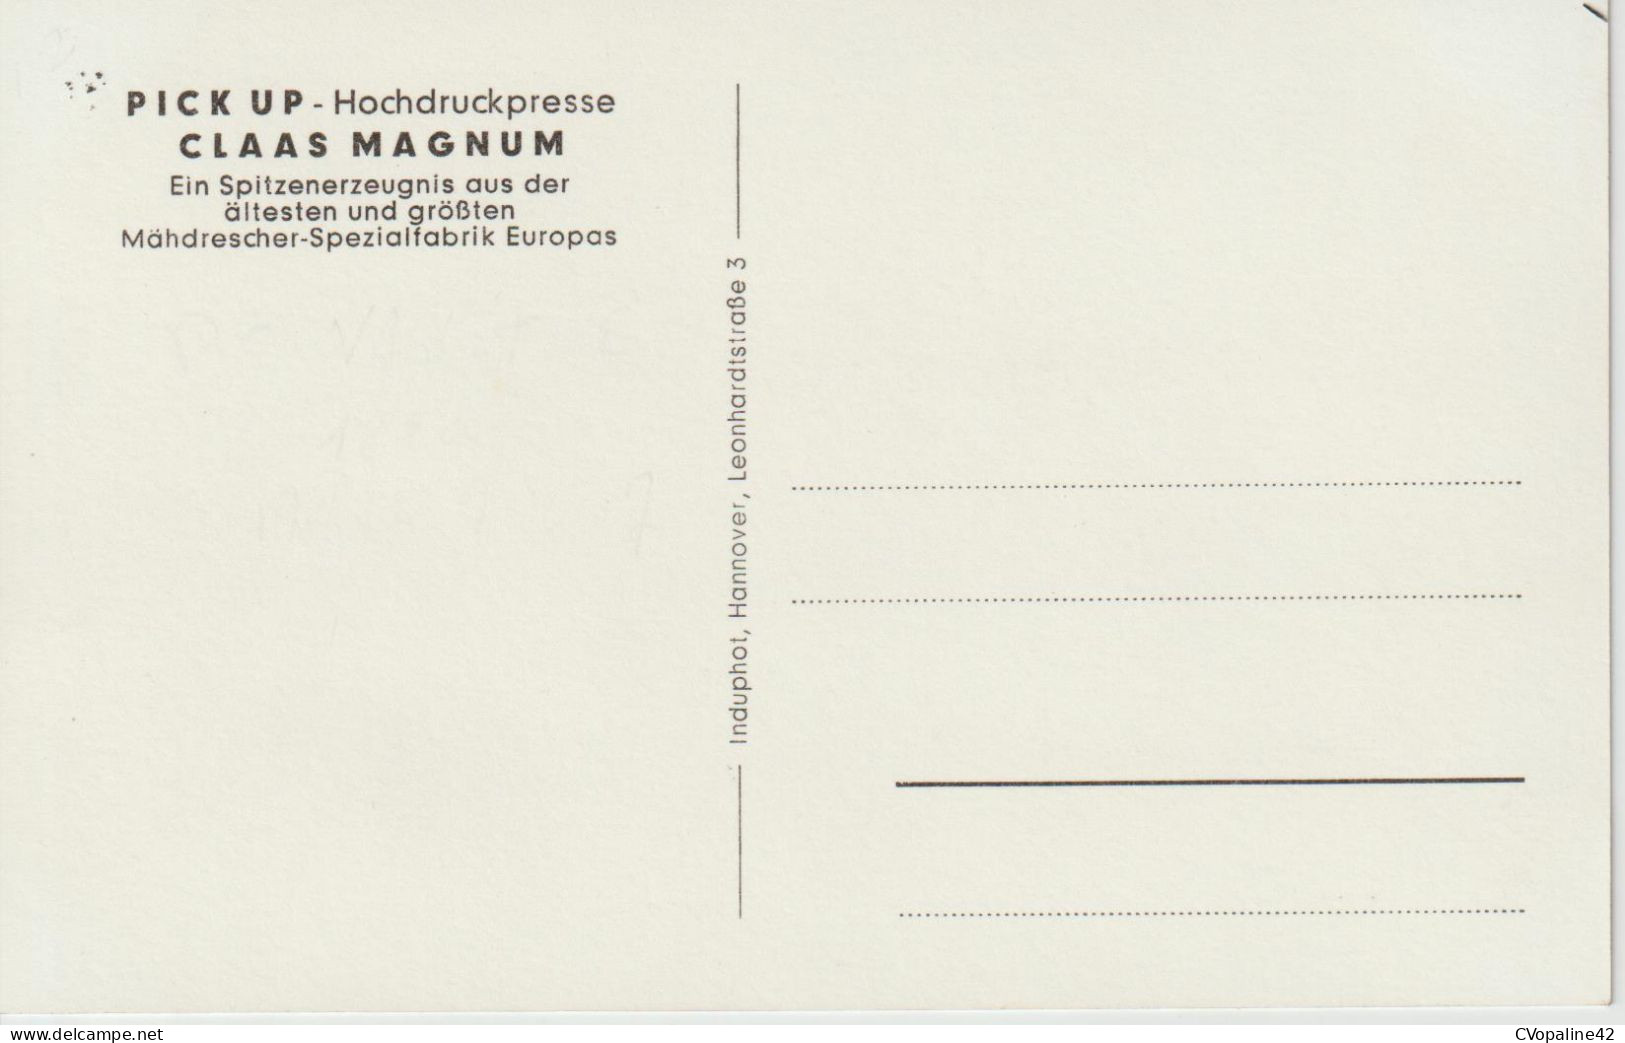 CLAAS MAGNUM - PICK UP - Hochdruckpresse - Werbepostkarten